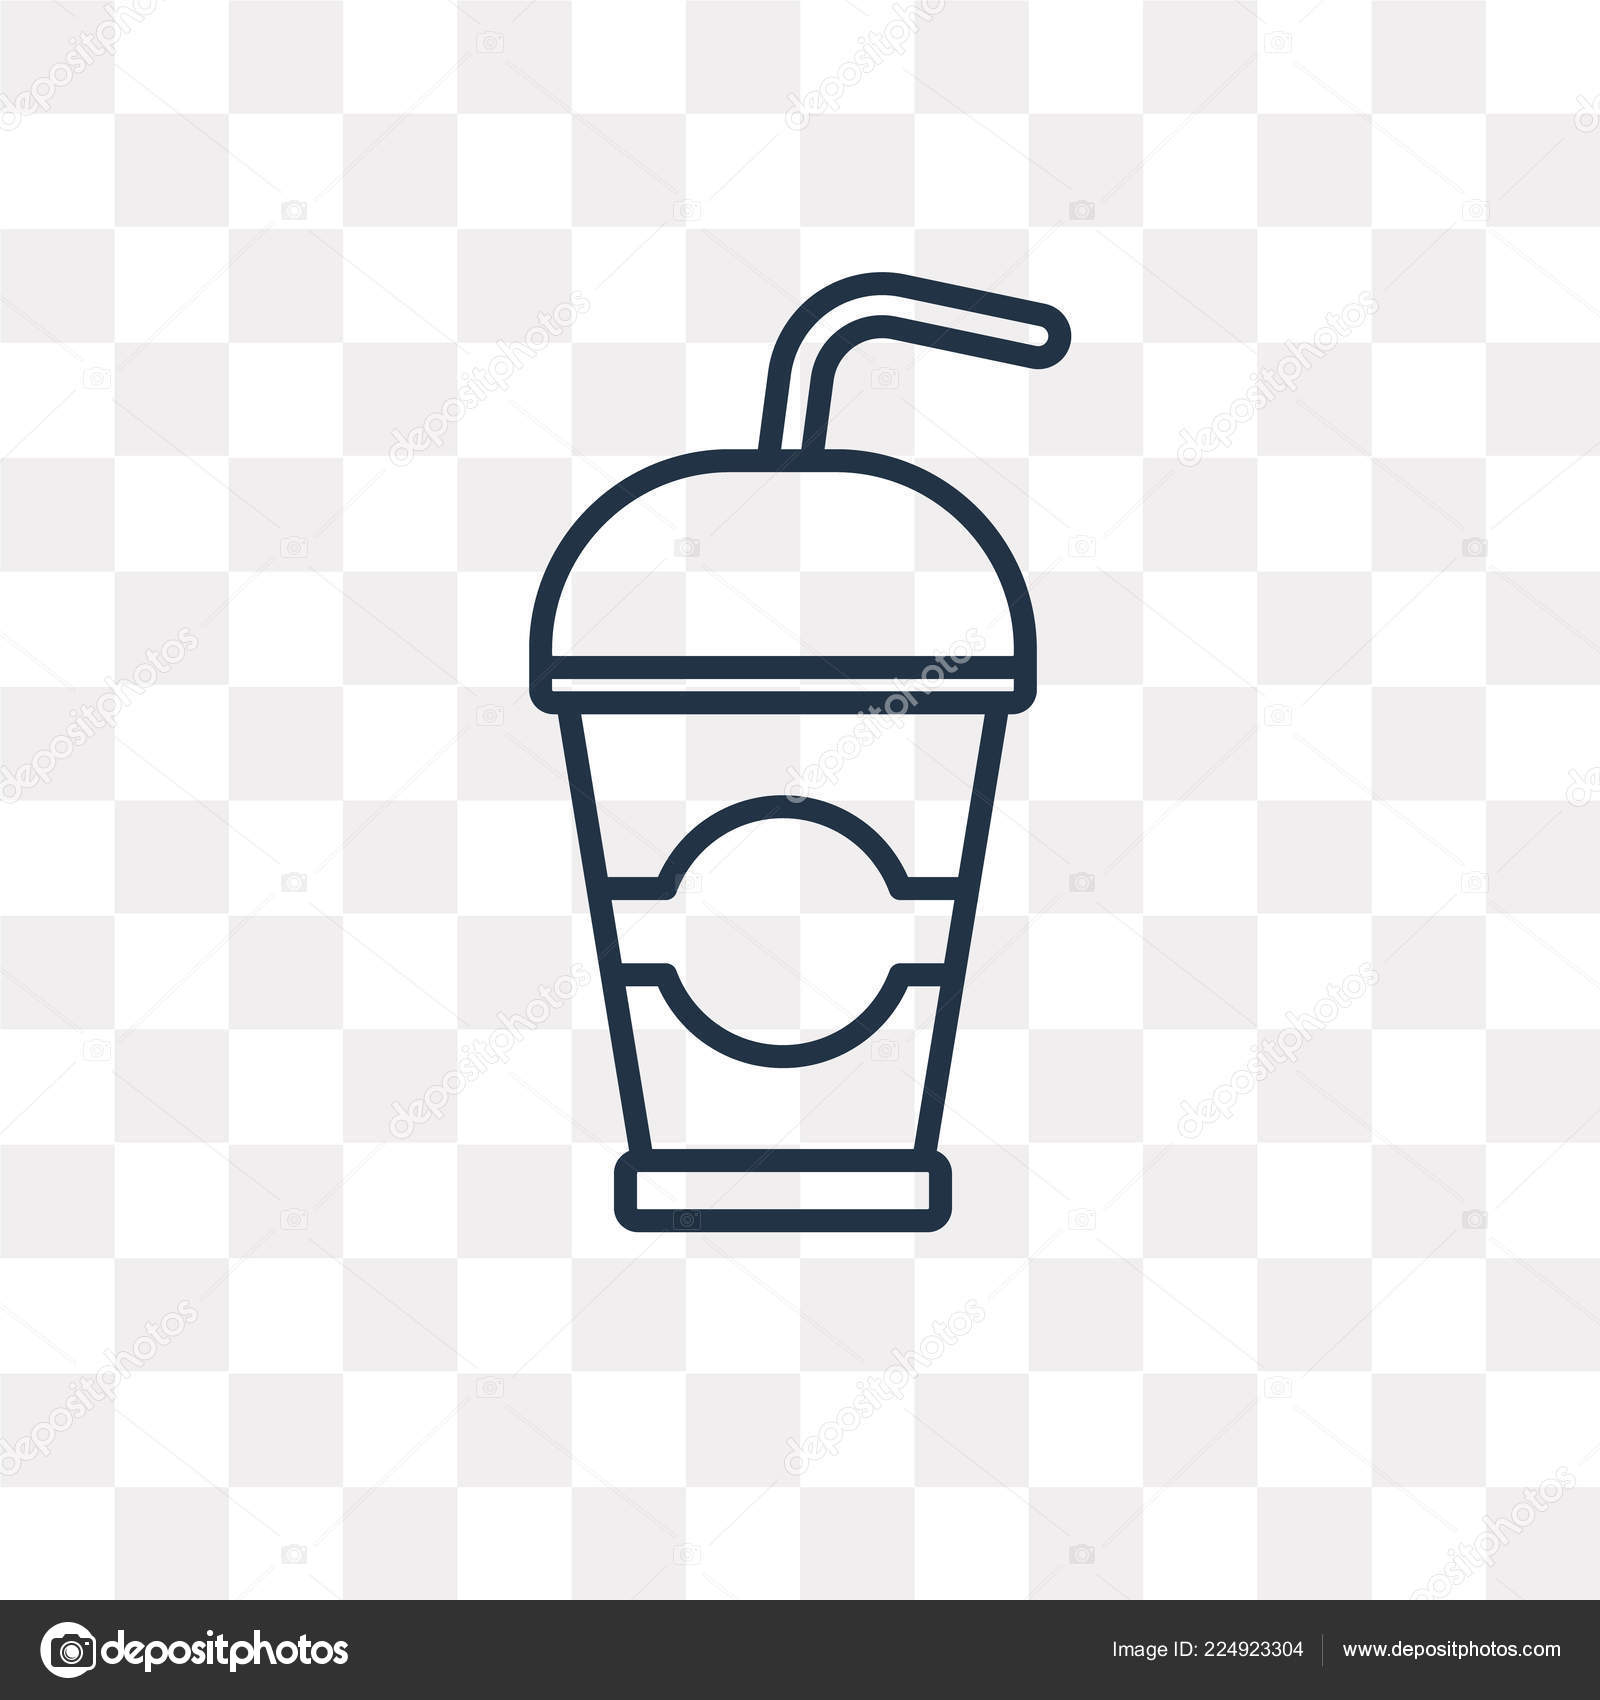 https://st4.depositphotos.com/18673546/22492/v/1600/depositphotos_224923304-stock-illustration-take-away-drink-vector-outline.jpg